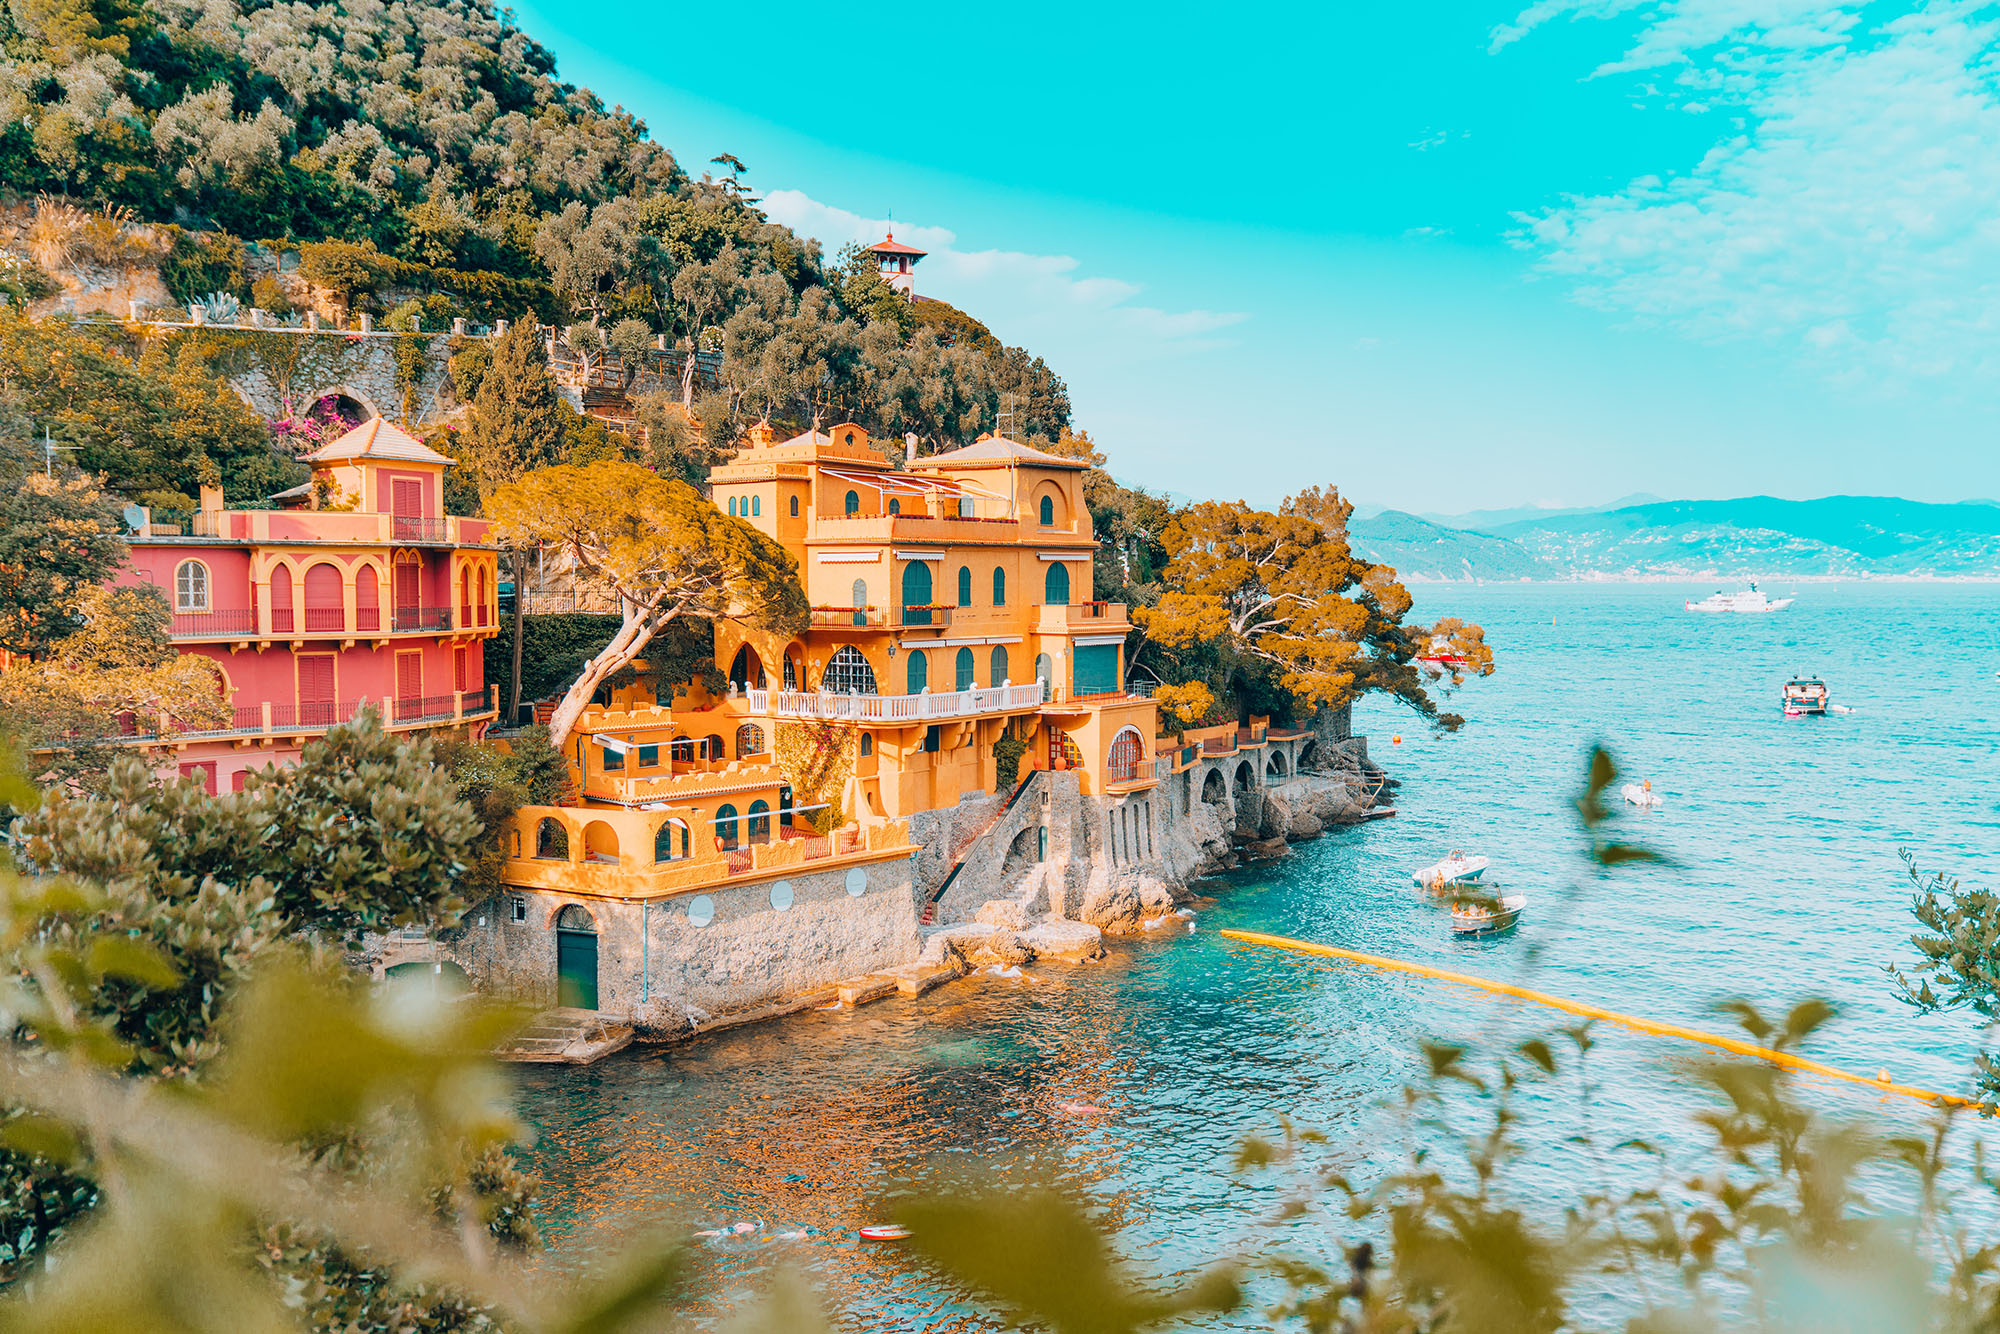 Cover Image for Portofino in 3 Days: The Perfect Guide for Your Italian Riviera Adventure